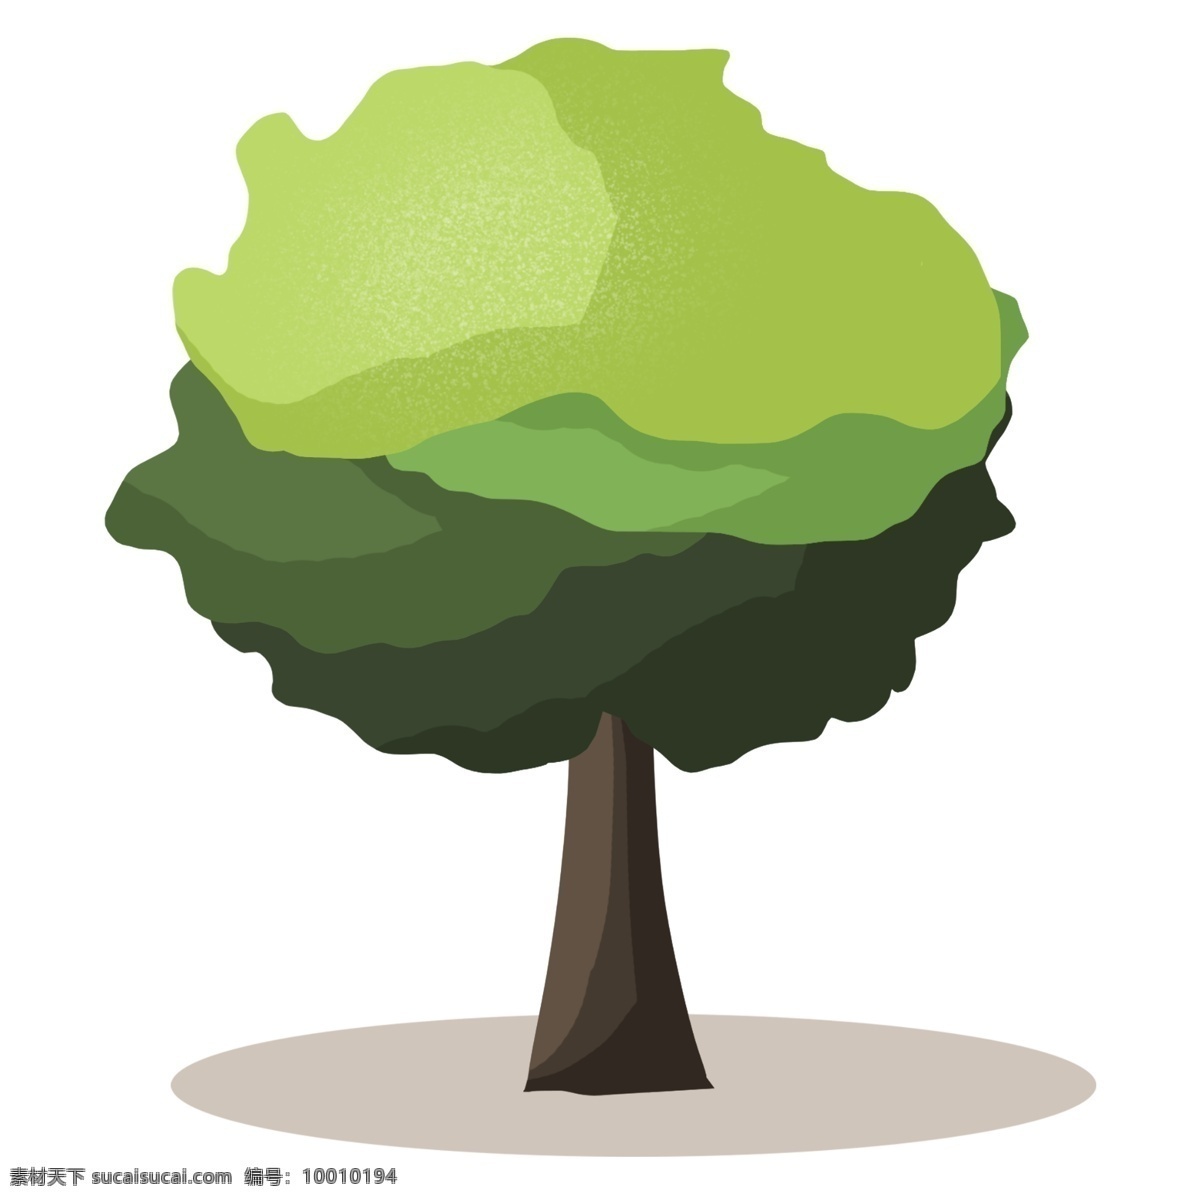 棵 大树 绿树 植物 一棵大树 绿色 平面树 立体树 树木 树干 自然 卡通树 树枝 叶子 大树装饰